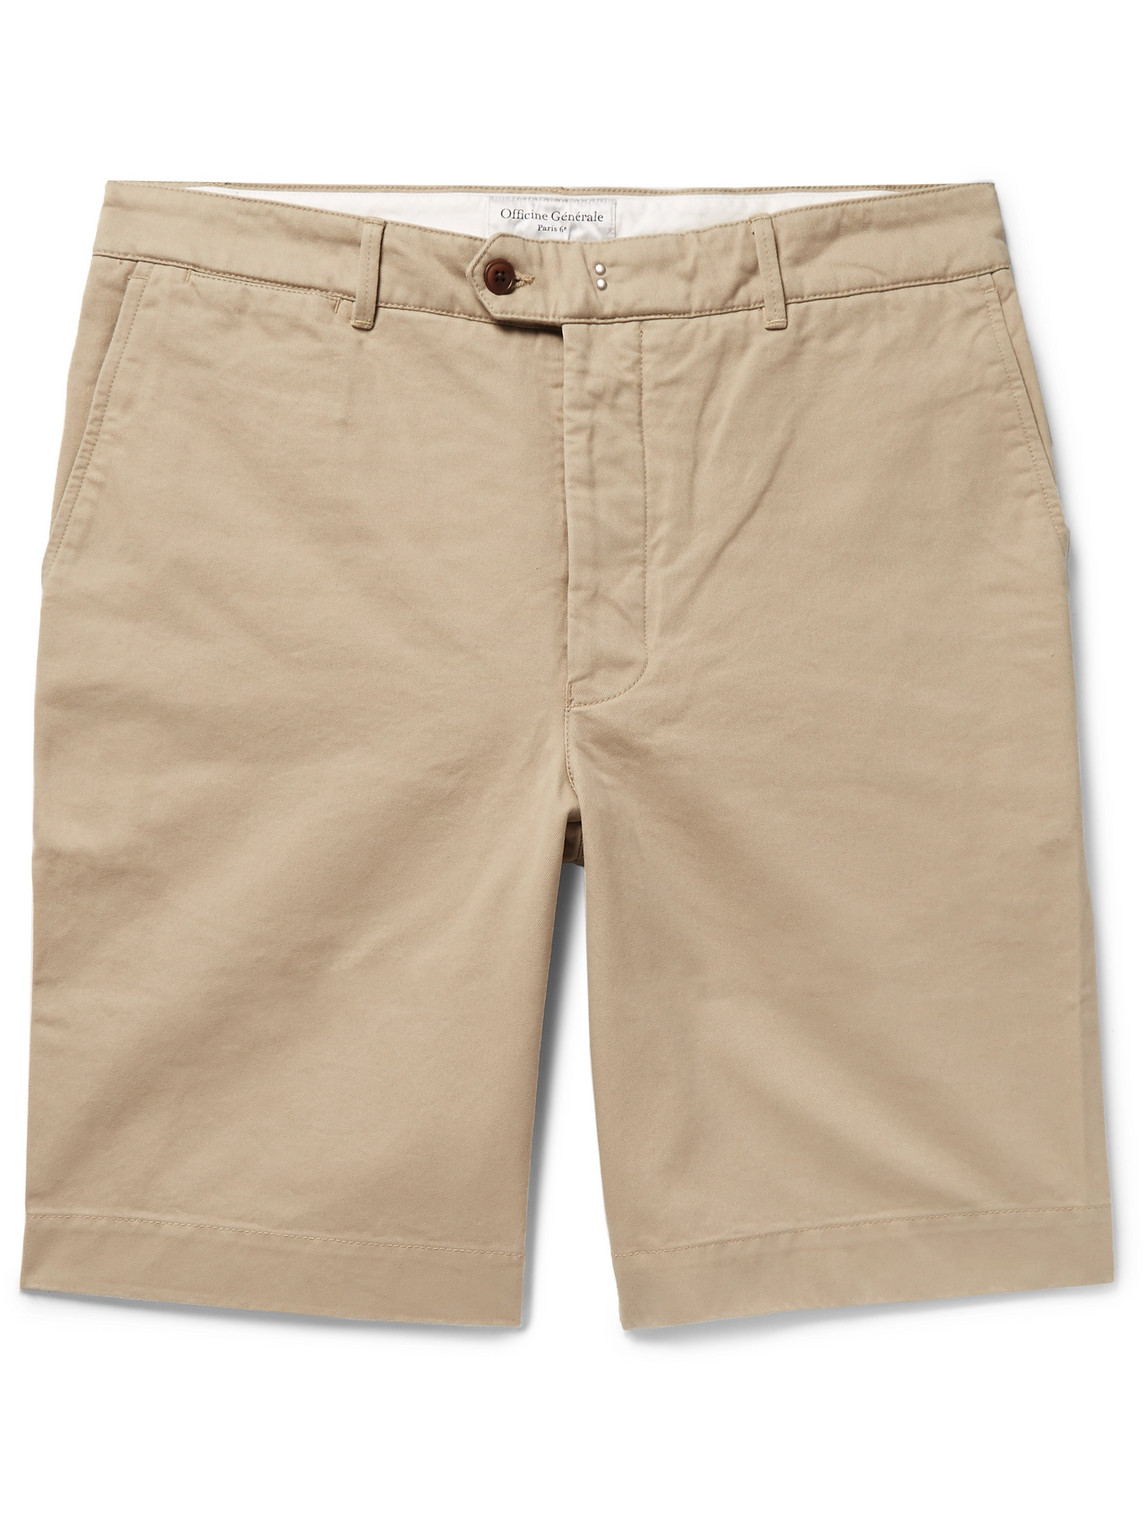 Officine Générale - Fisherman Cotton-Twill Shorts - Men - Neutrals - UK/US 28 von Officine Générale